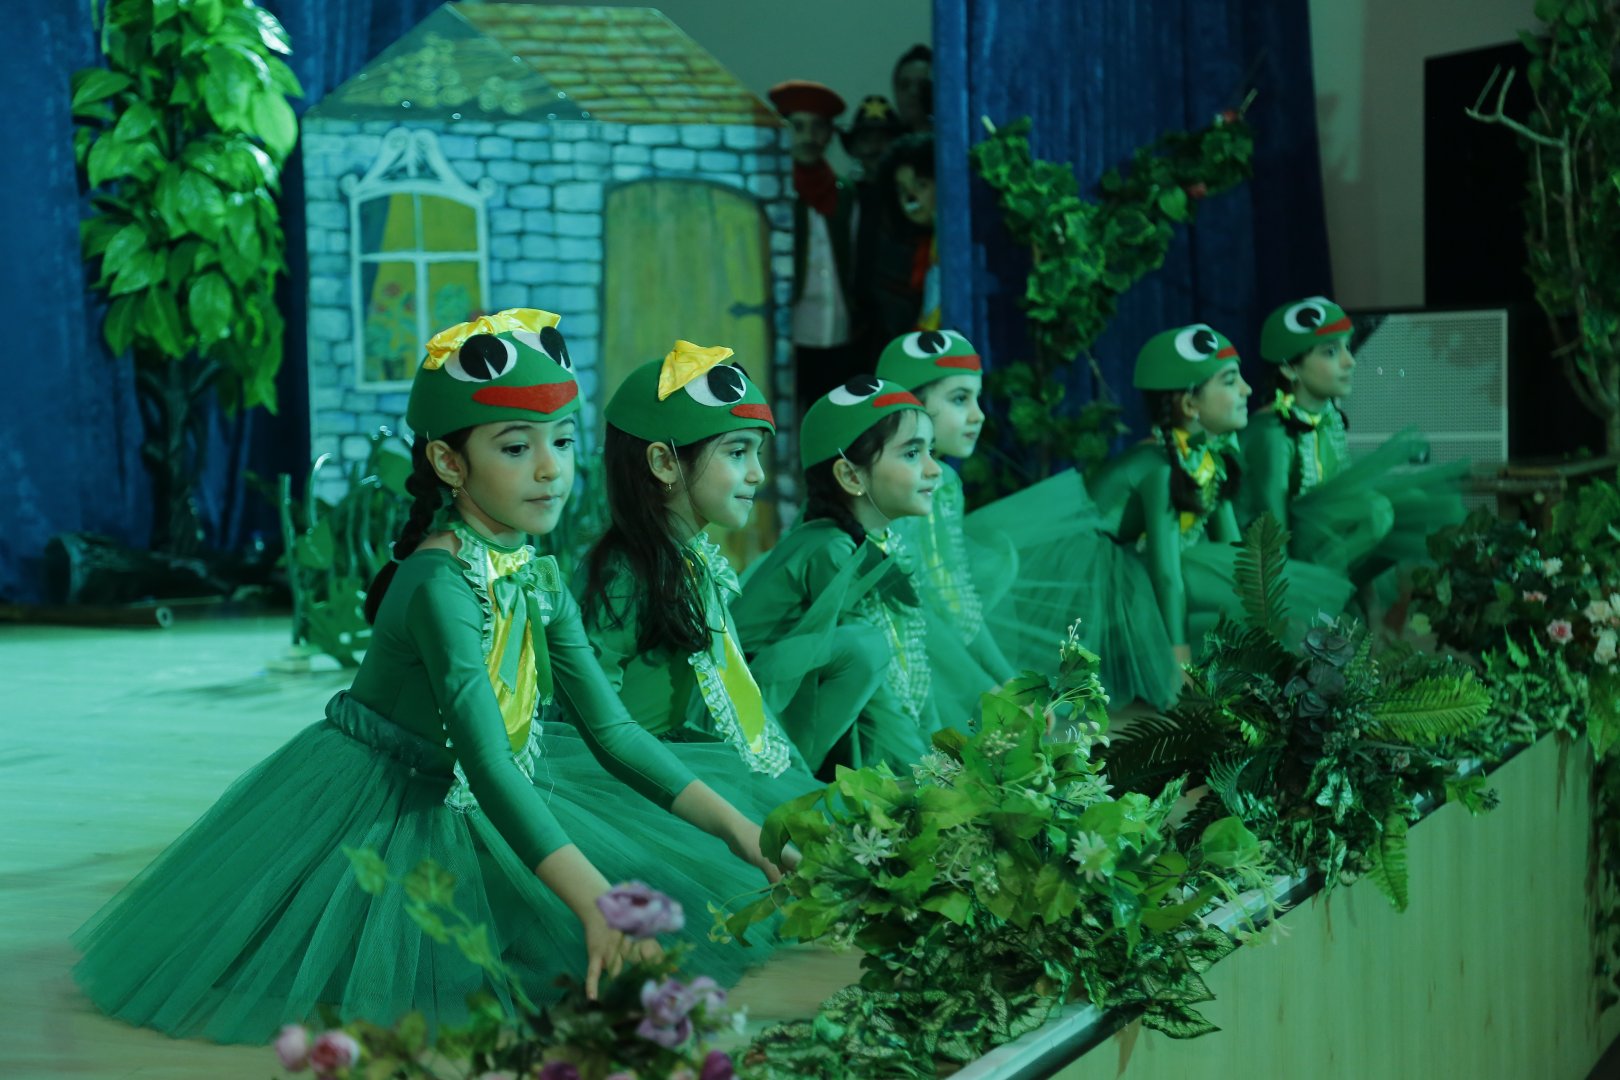 Azərbaycan Dövlət Uşaq Filarmoniyası “Buratino” tamaşasını hazırlayıb (FOTO/VİDEO)